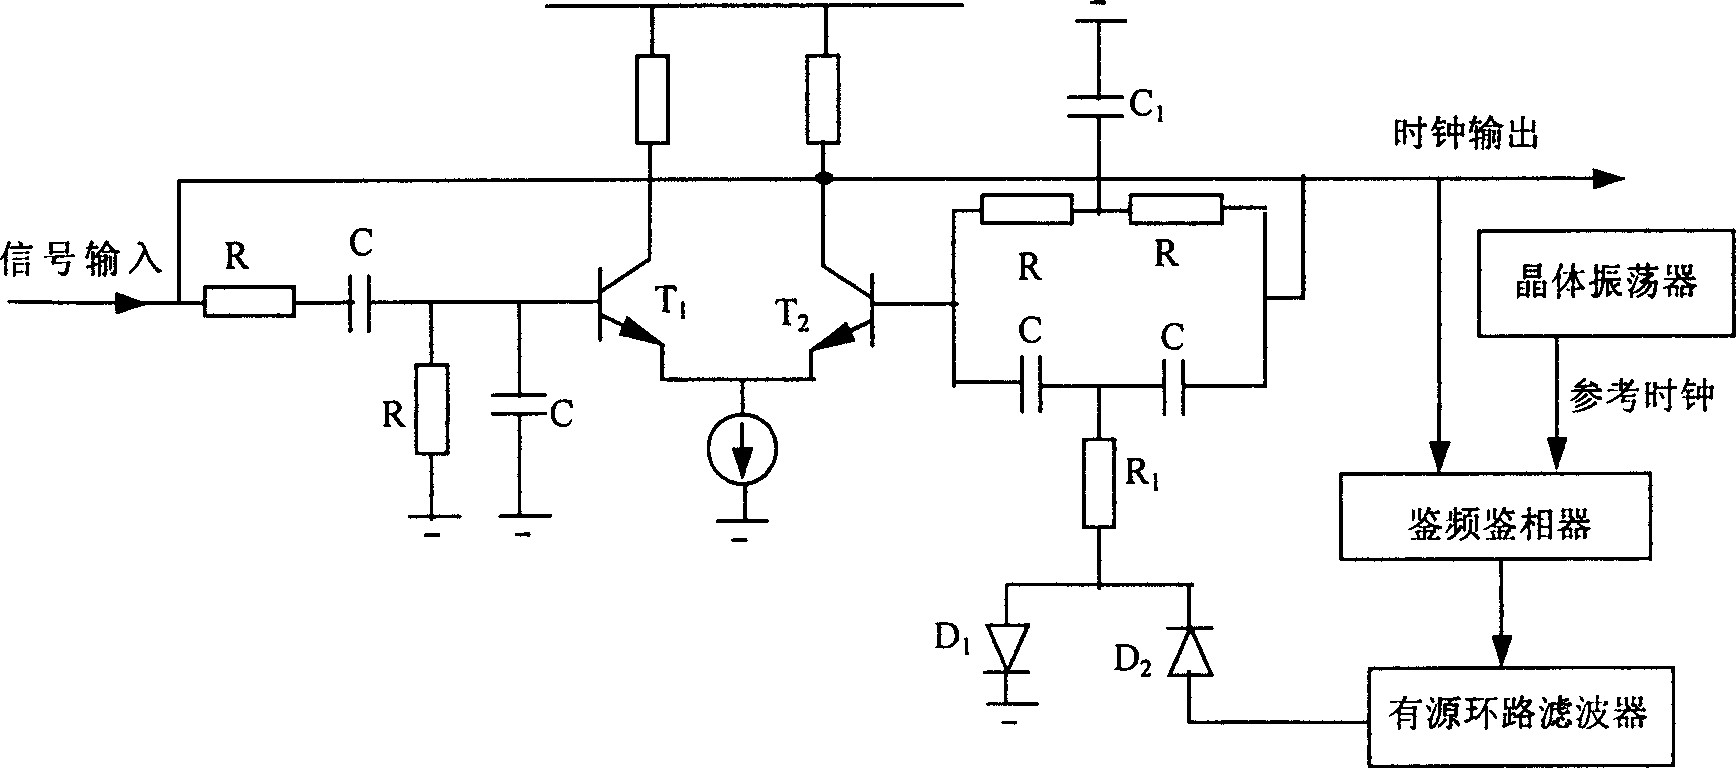 A quick bit synchronous circuit